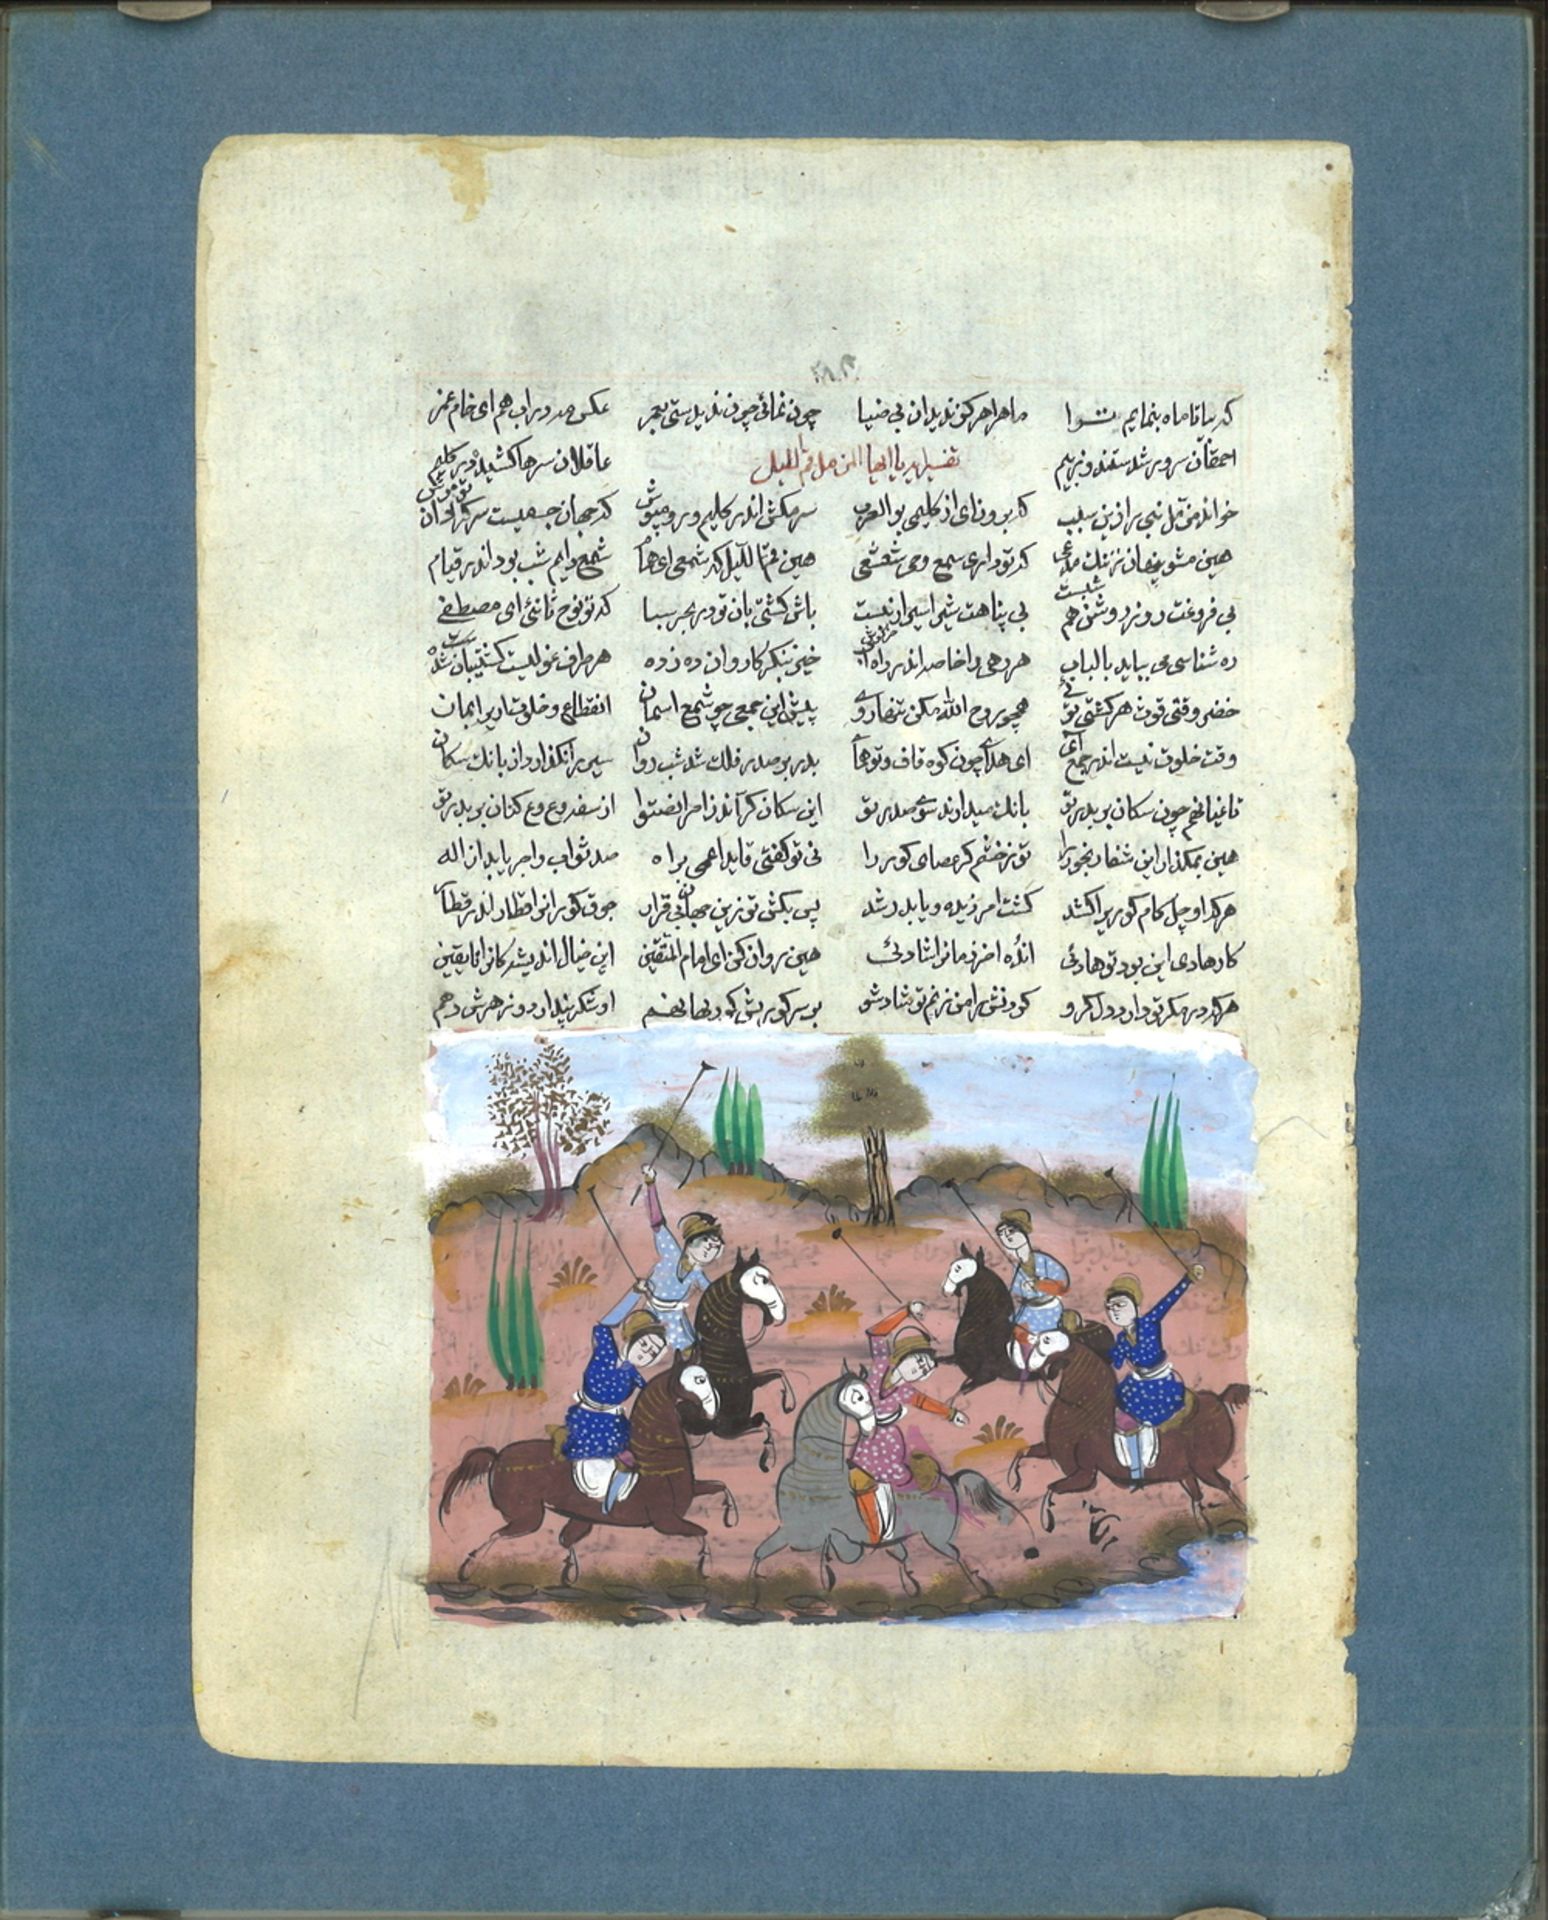 Persische Illustration, wohl aus dem Buch Shahnameh - Buch der Könige von Abul-Qasim Mansur